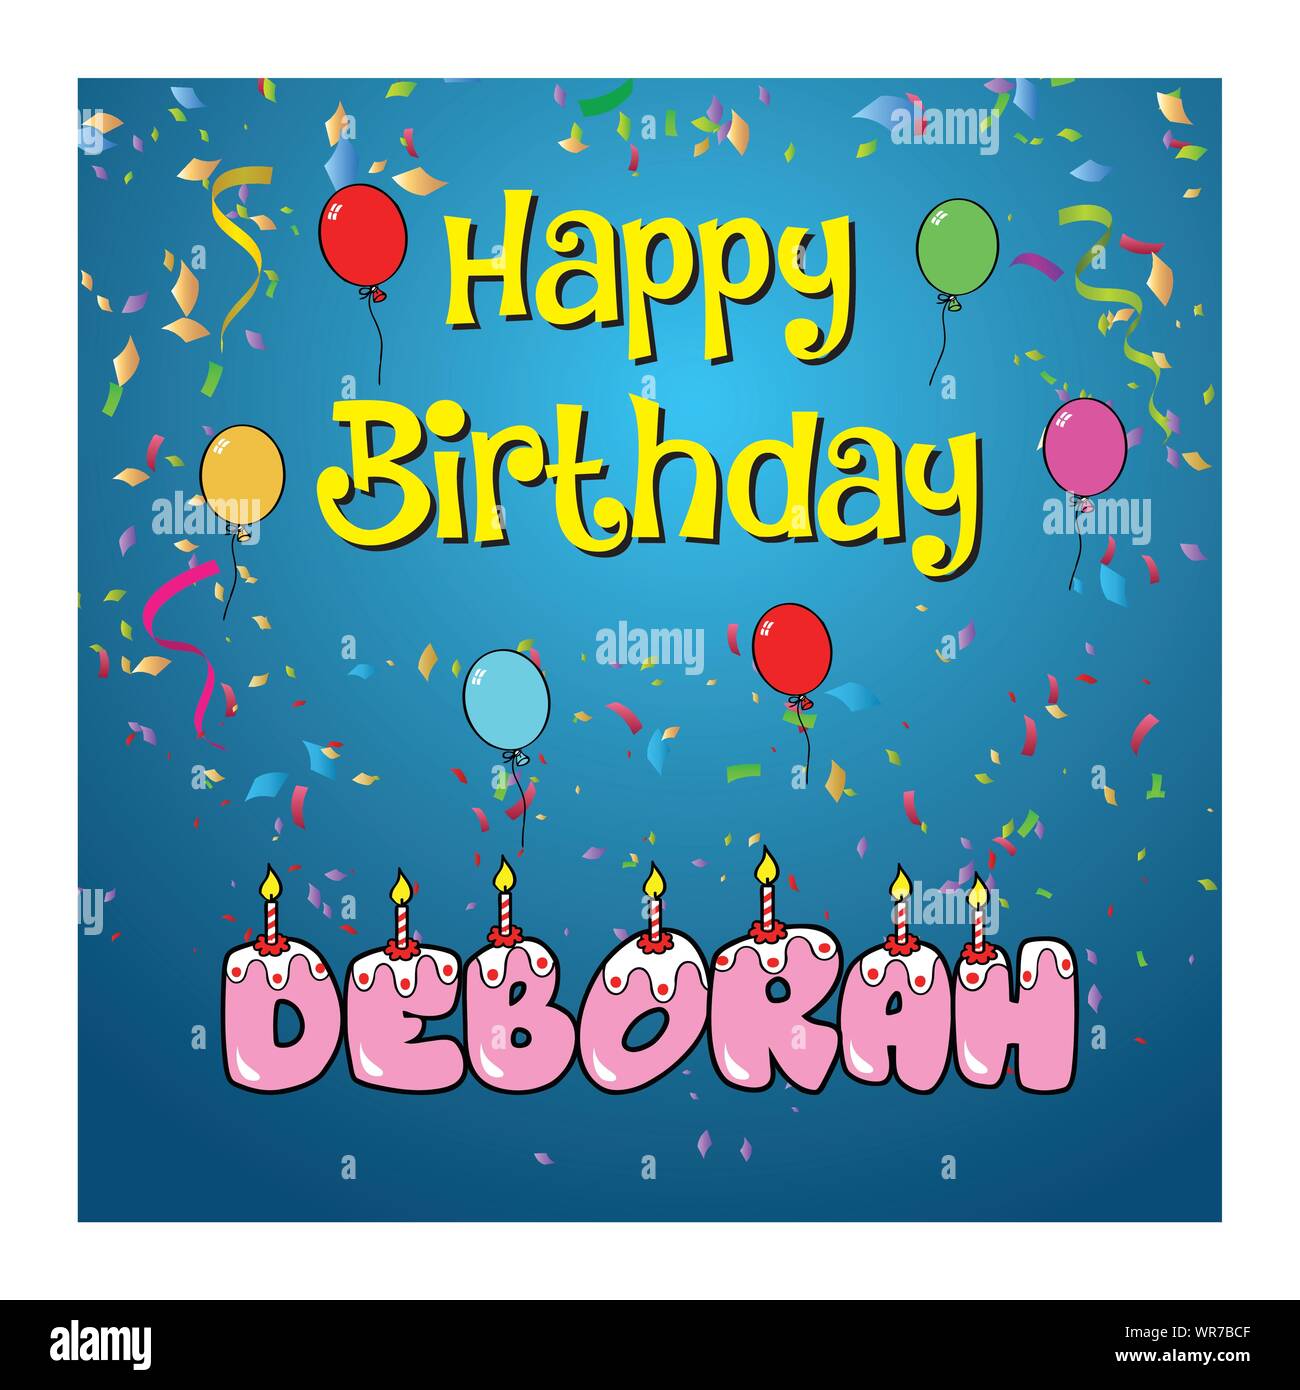 Happy Birthday Deborah Clipart